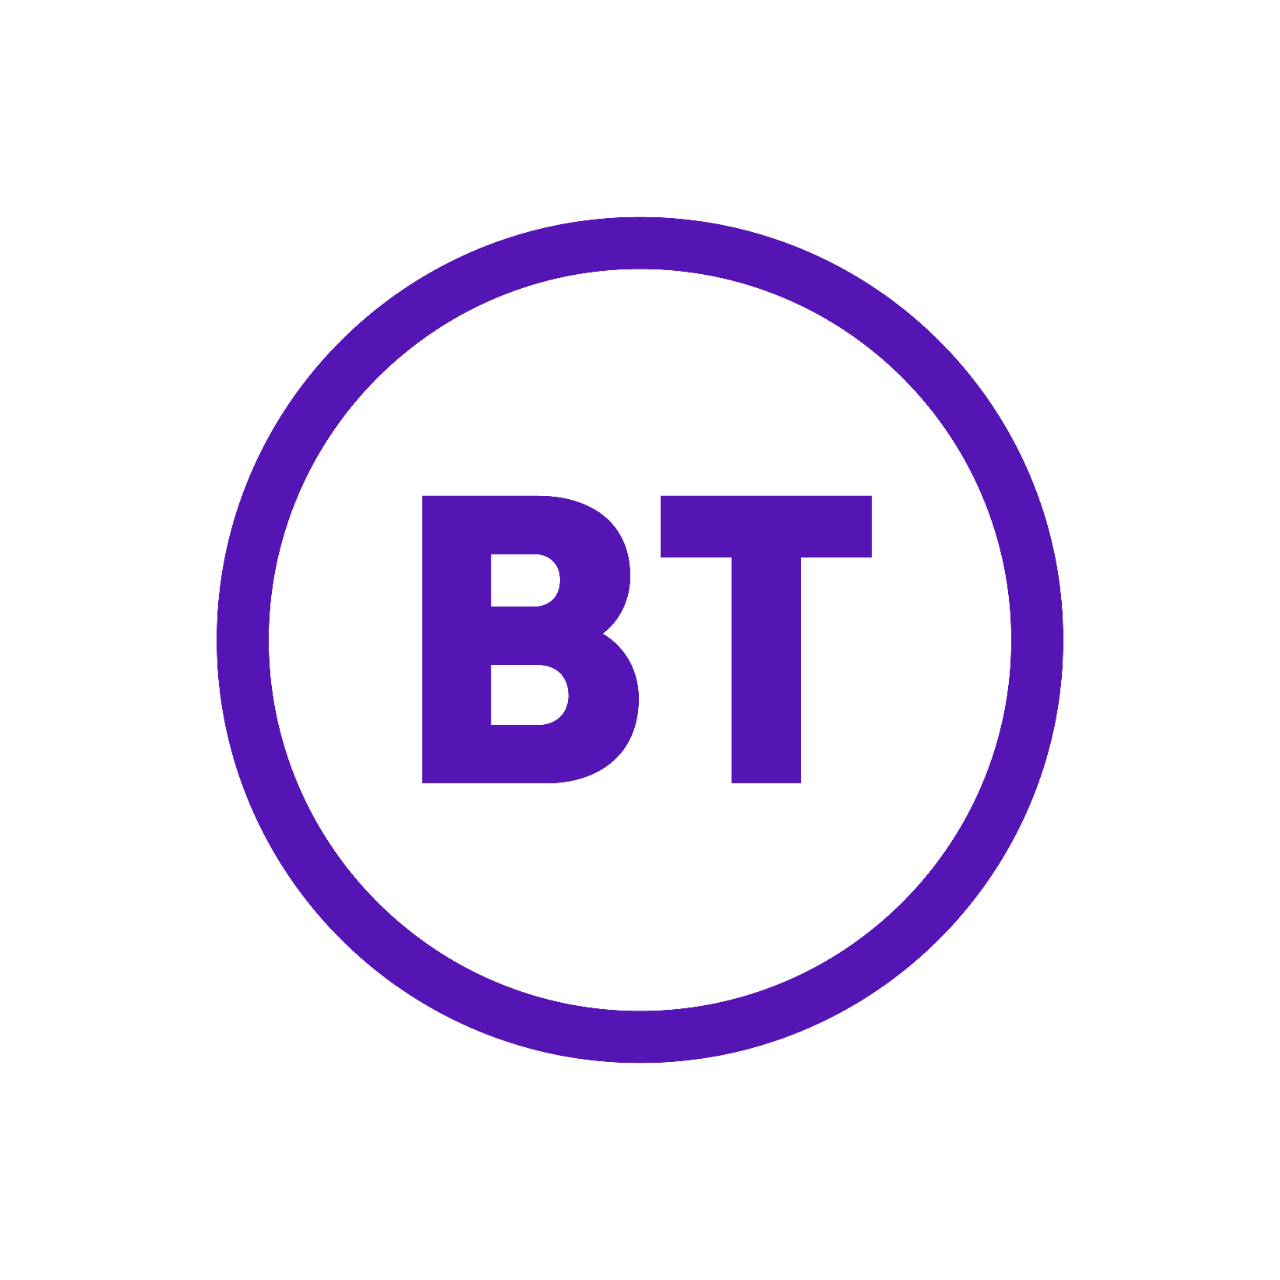 BT's logo